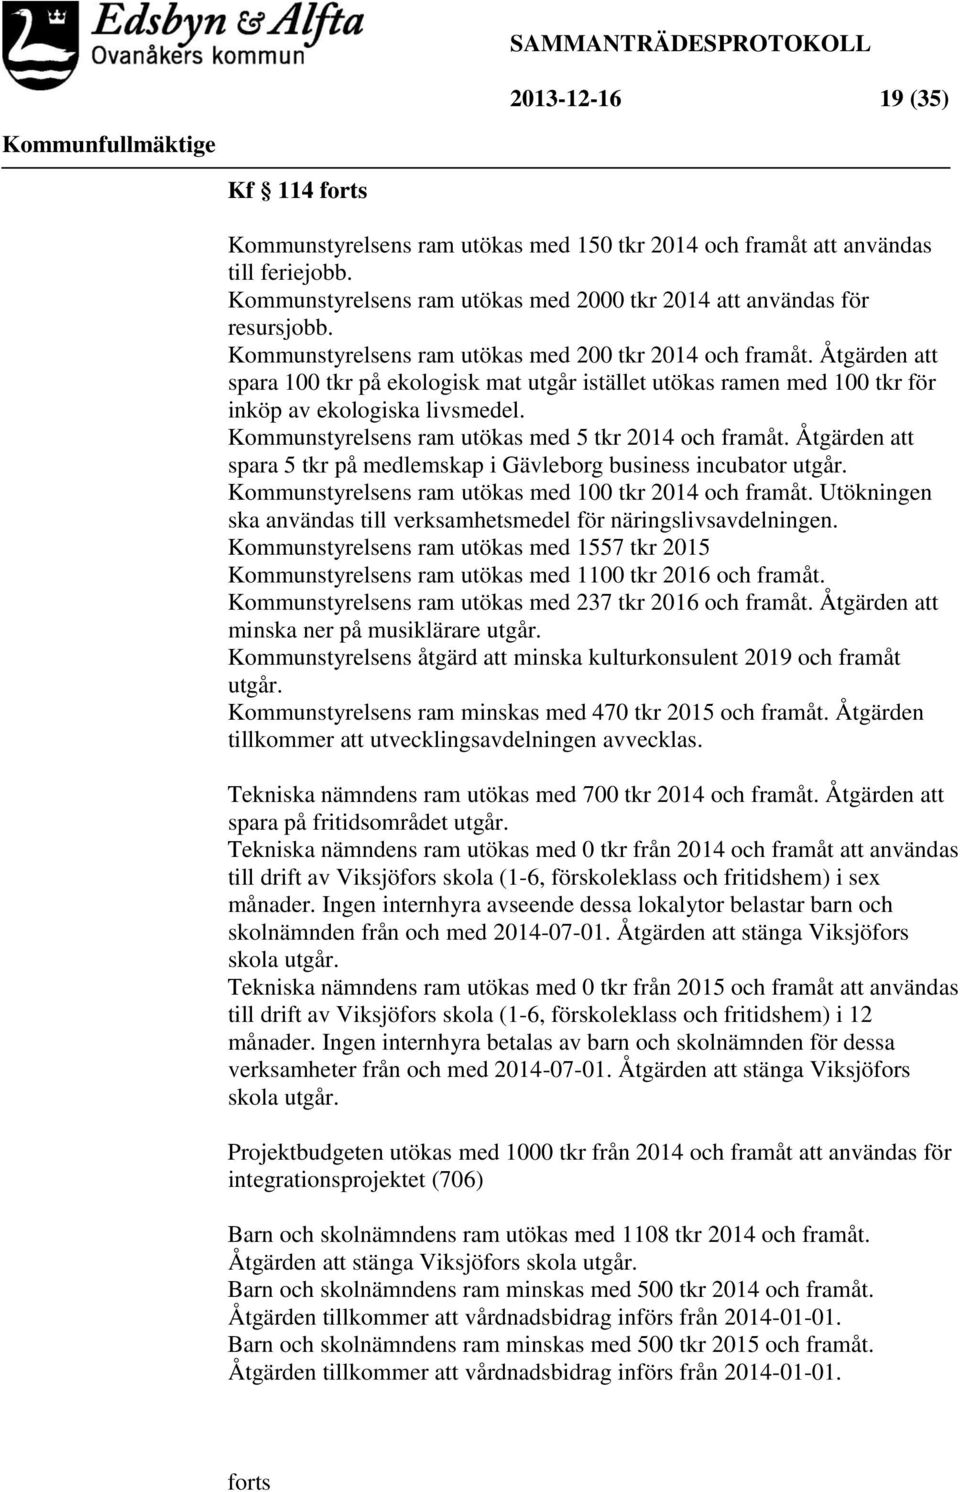 Kommunstyrelsens ram utökas med 5 tkr 2014 och framåt. Åtgärden att spara 5 tkr på medlemskap i Gävleborg business incubator utgår. Kommunstyrelsens ram utökas med 100 tkr 2014 och framåt.